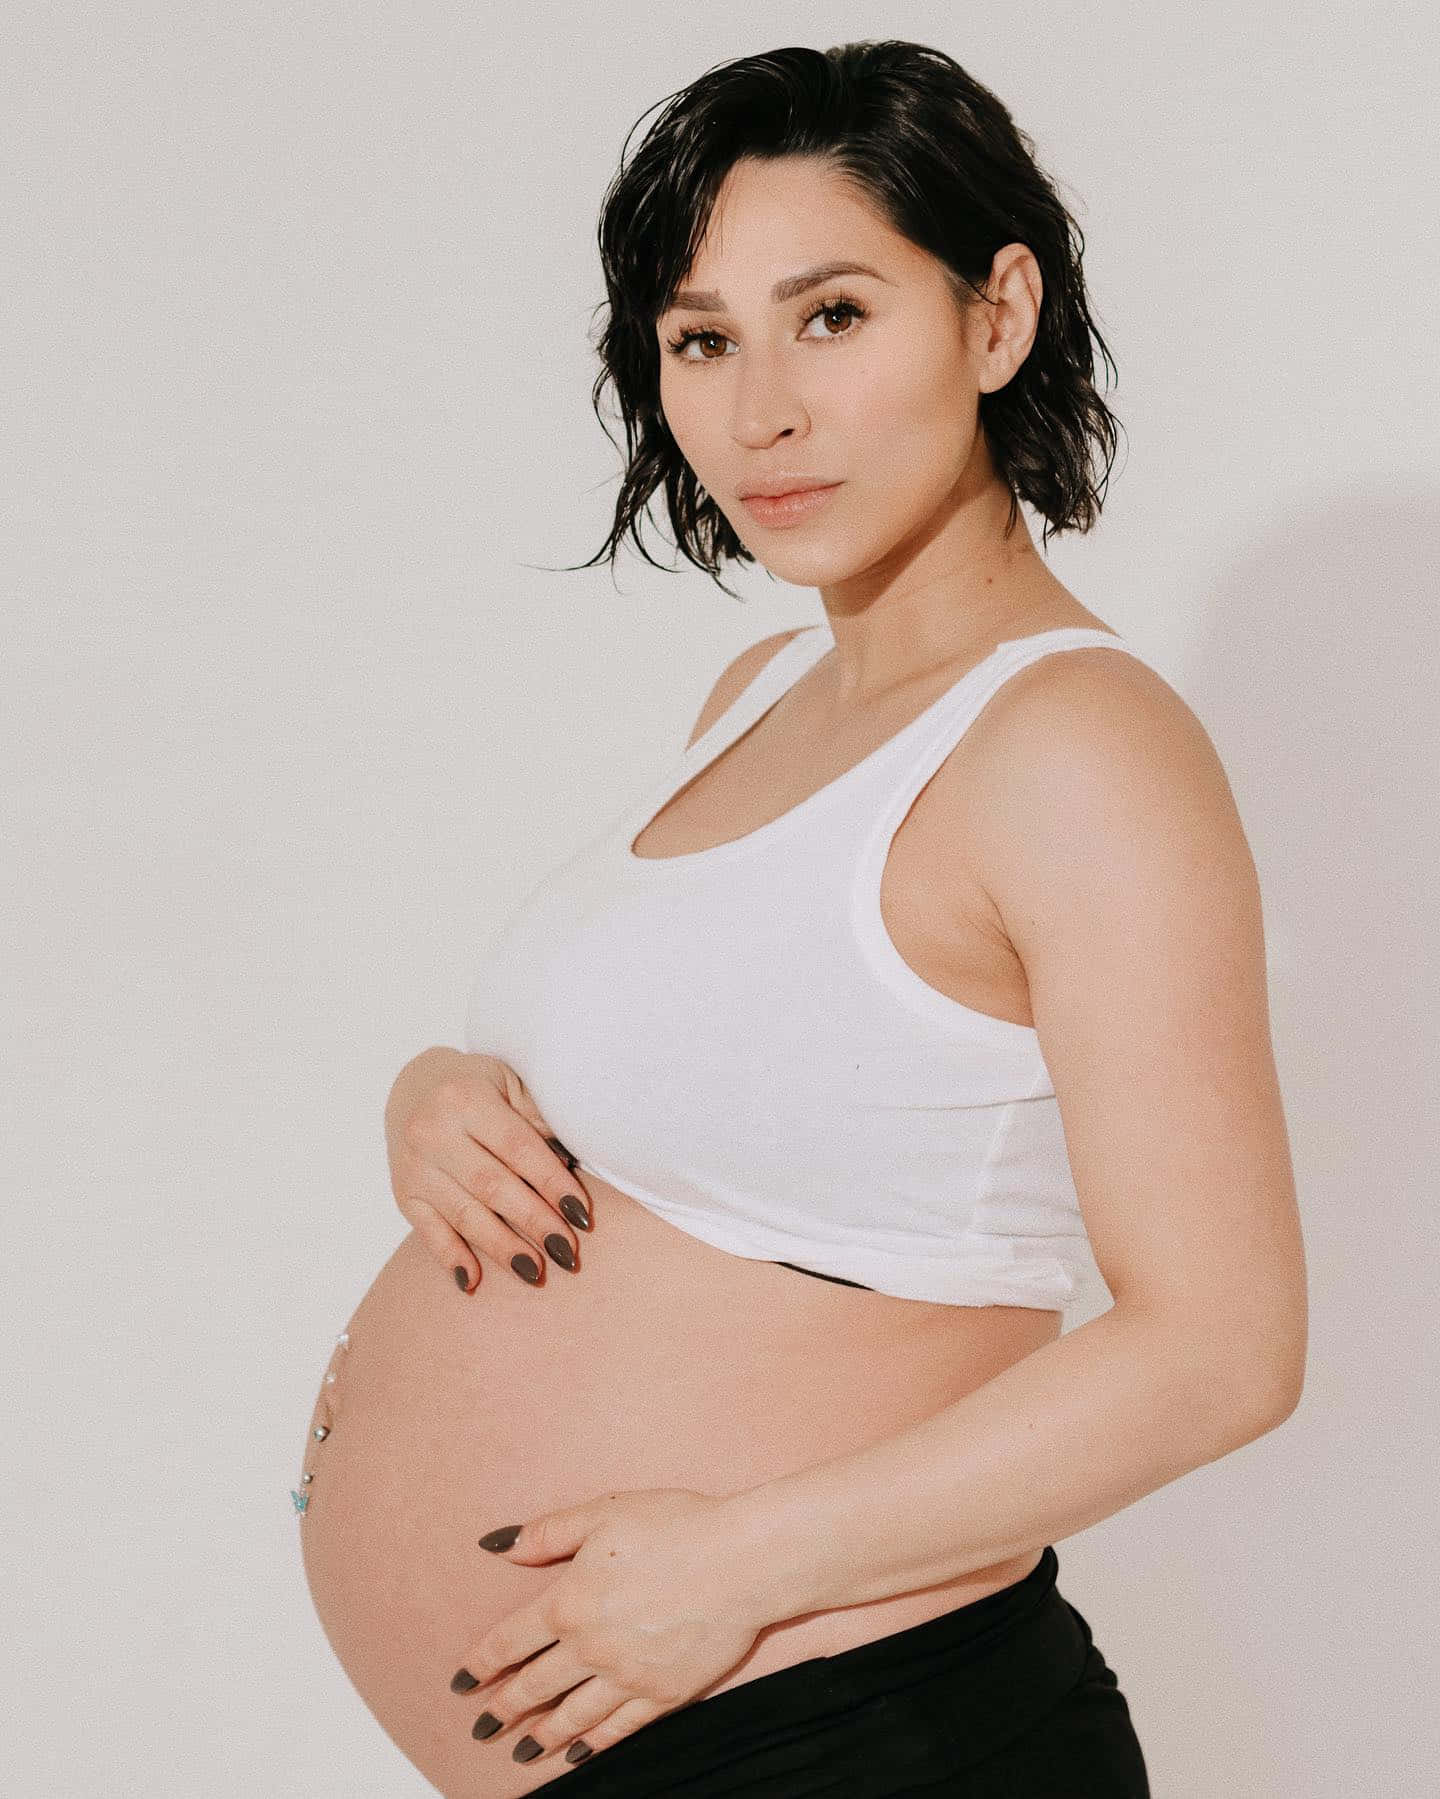 Pregnant Woman Posingin White Tank Top Wallpaper